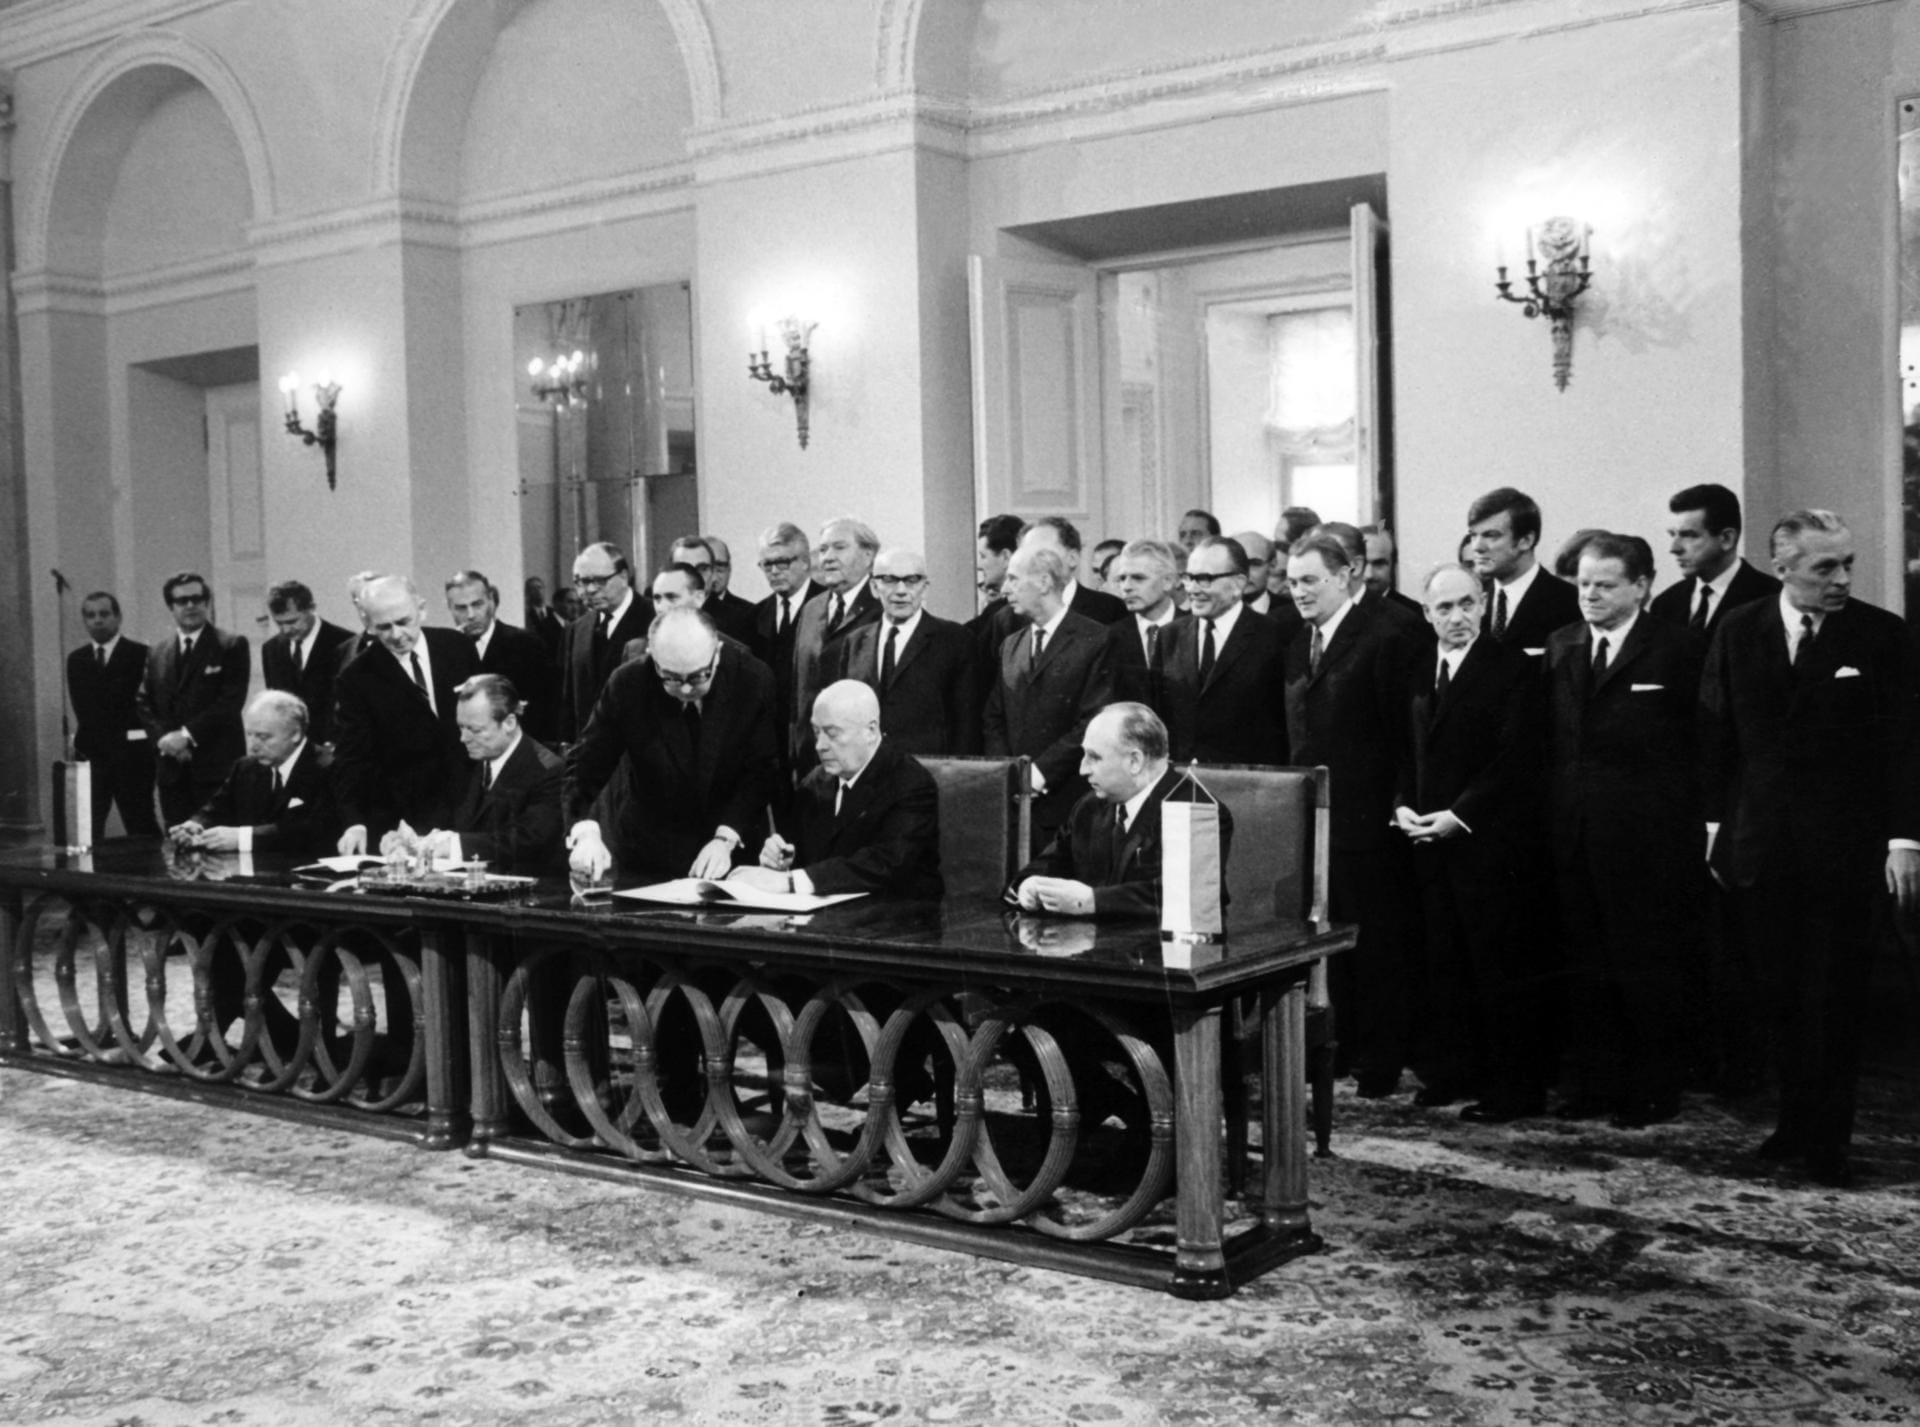 Am 7. Dezember 1970 unterzeichneten Scheel und Brandt in diesem Zusammenhang gemeinsam mit dem polnischen Ministerpräsidenten Jozef Cyrankiewicz und dessen Außenminister Stefan Jedrychowski den deutsch-polnischen Vertrag.